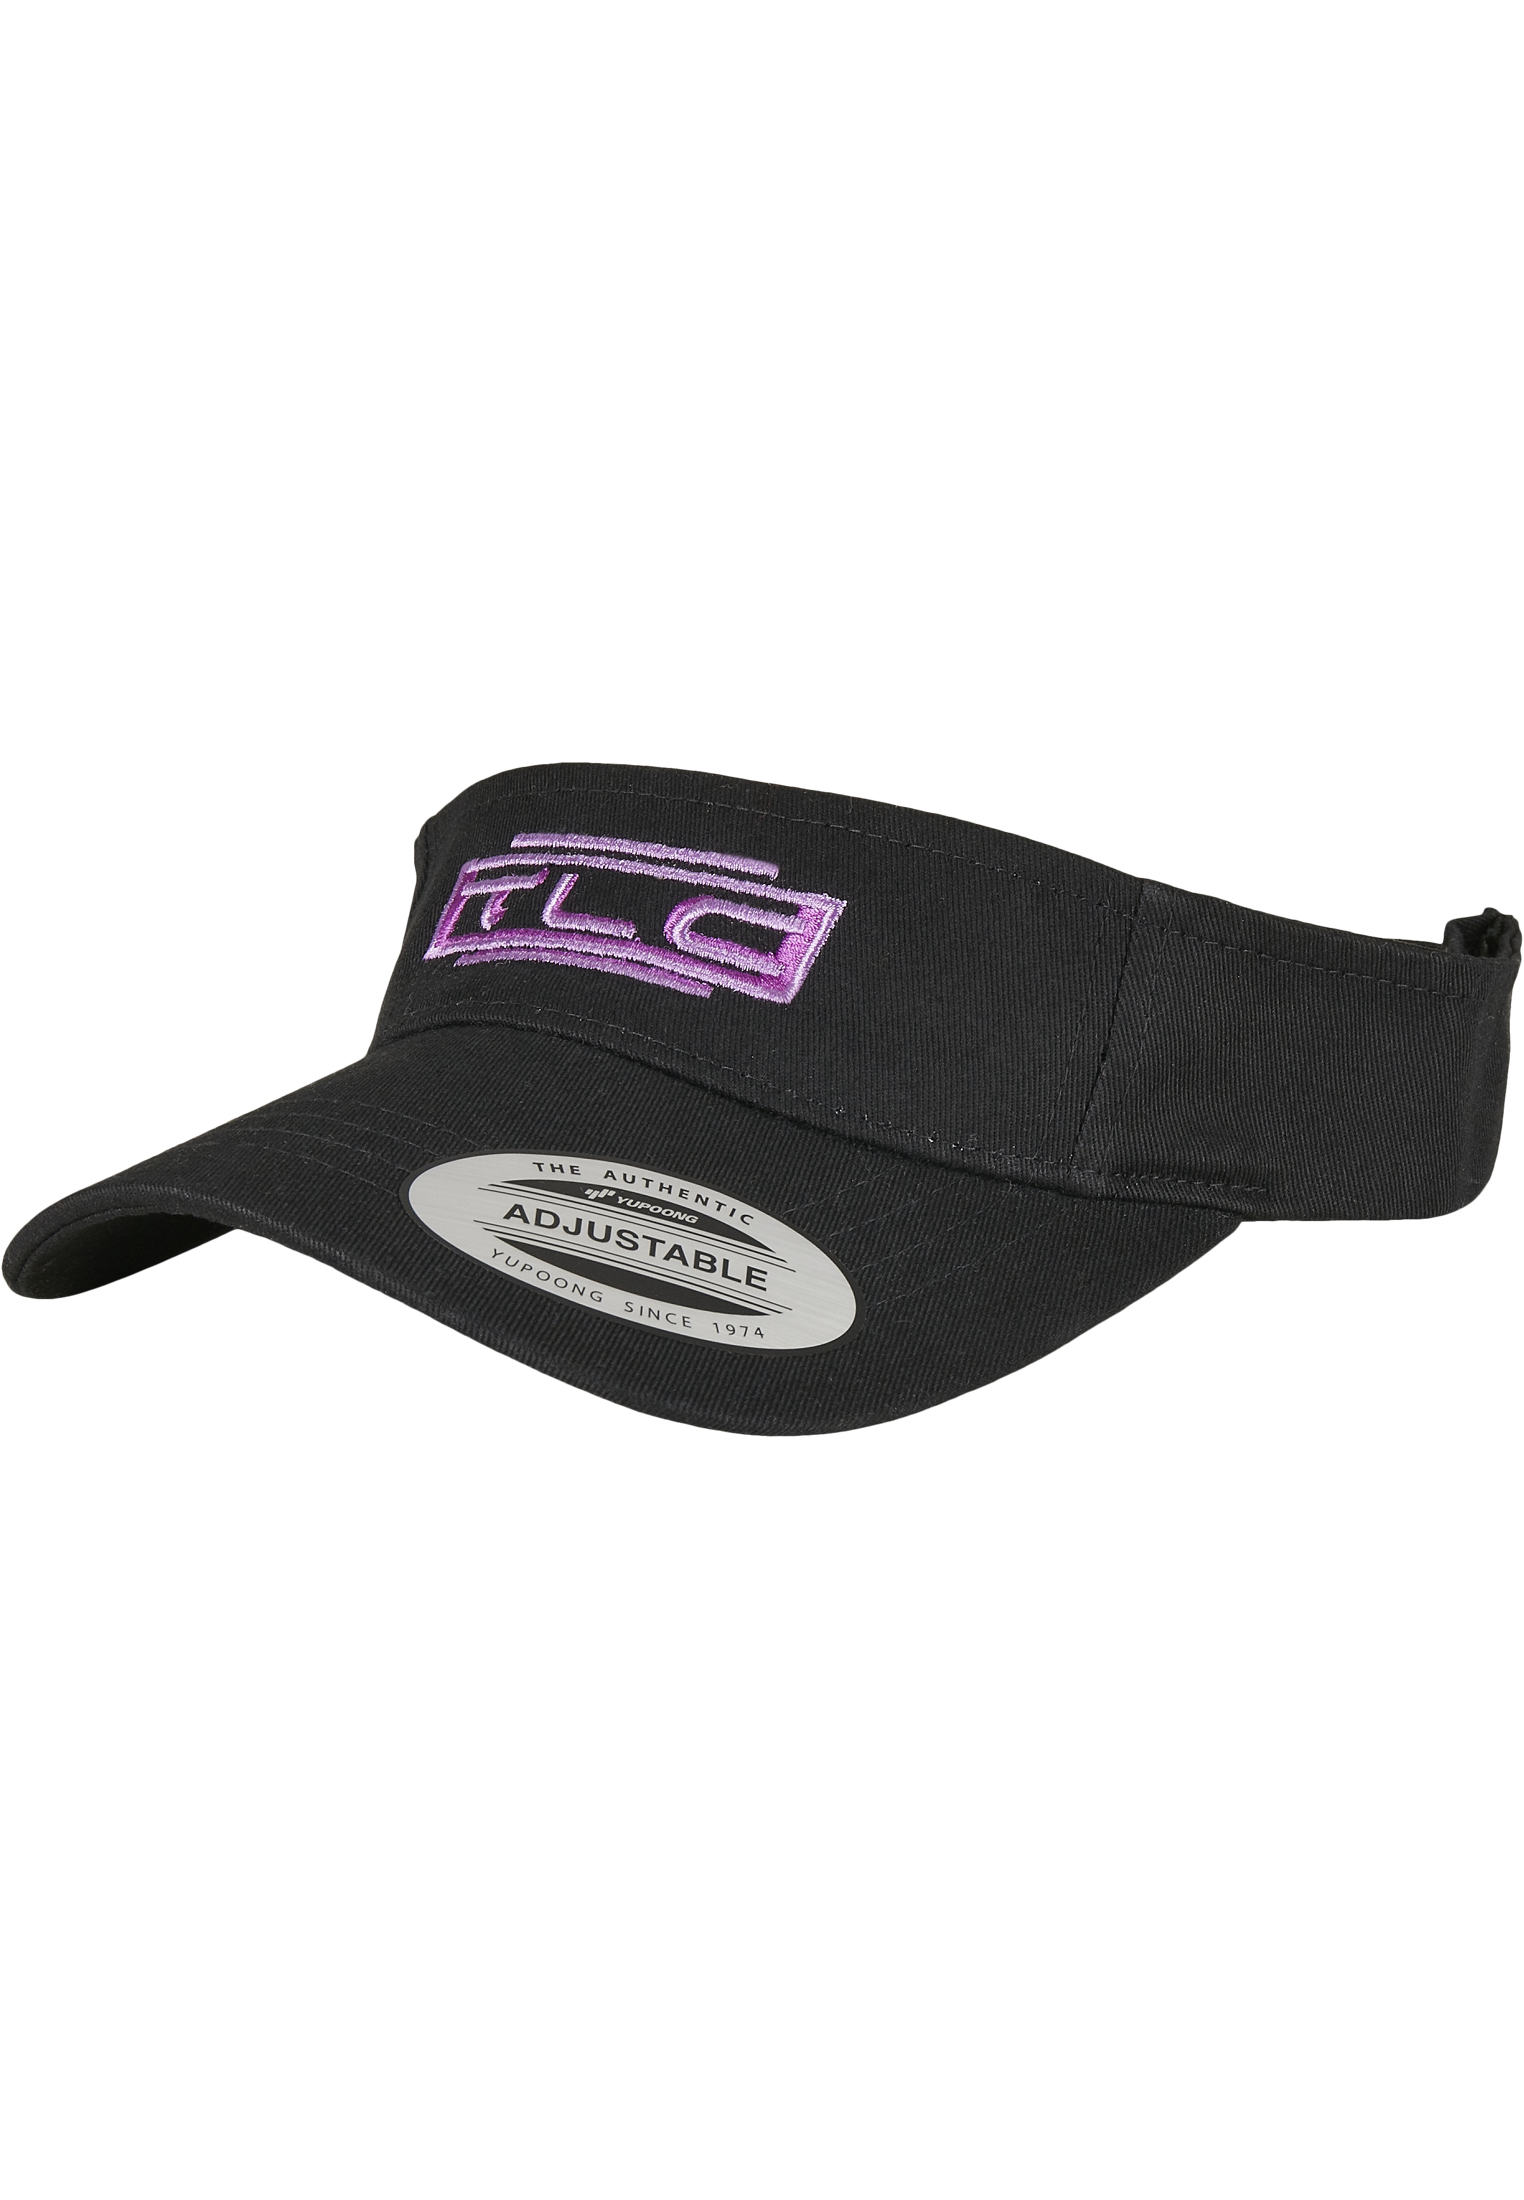 TLC logo shield black